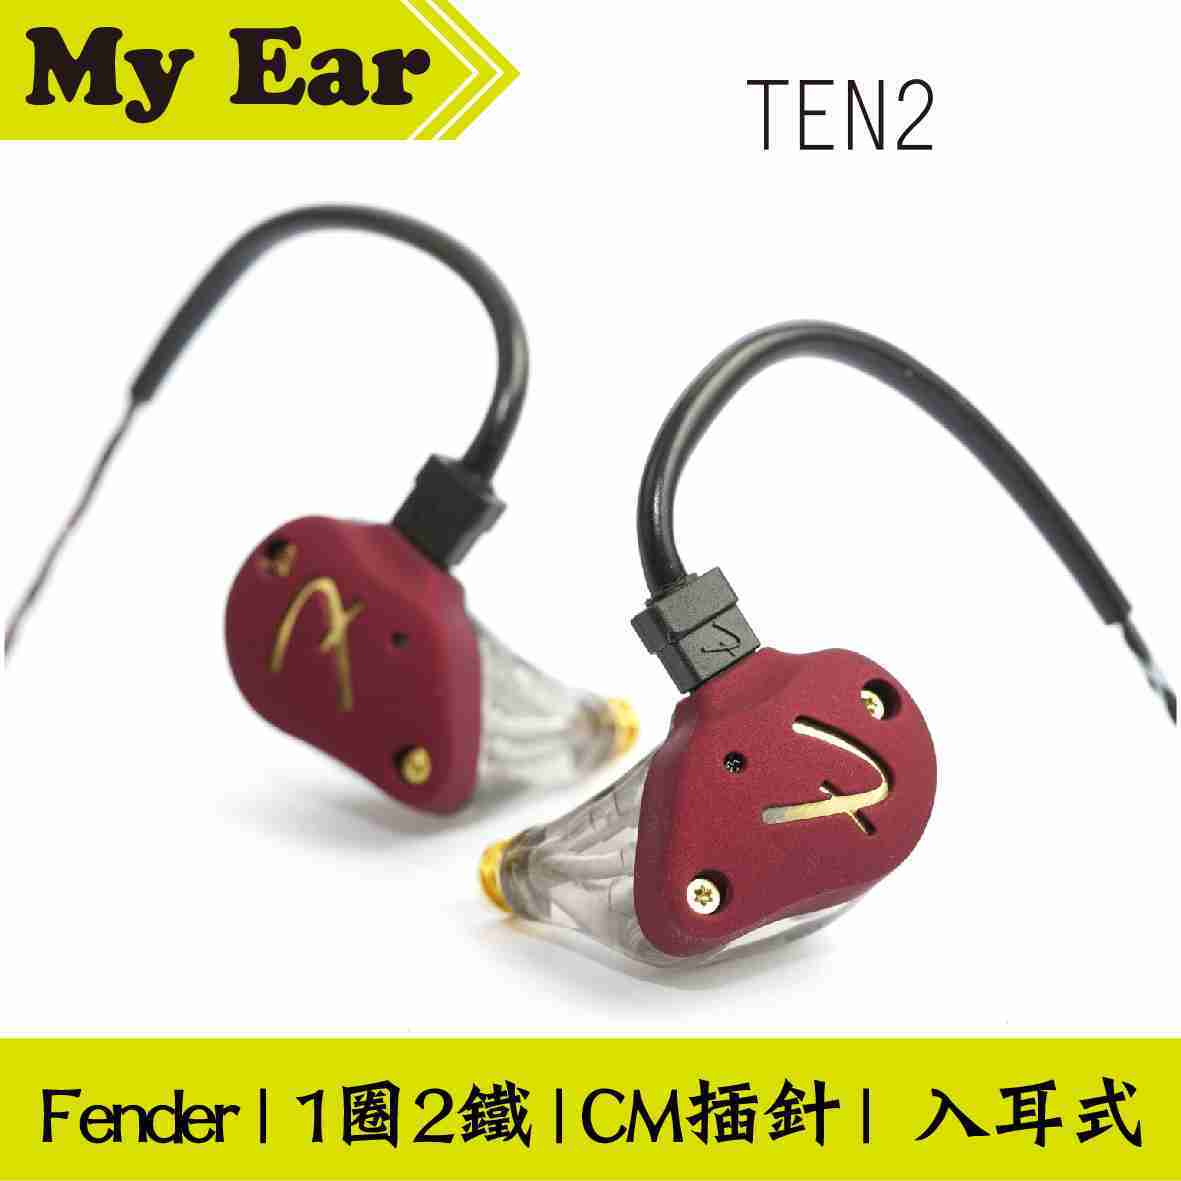 Fender TEN 2 1圈2鐵 混合 監聽 入耳式 進階 耳機 | My Ear 耳機專門店